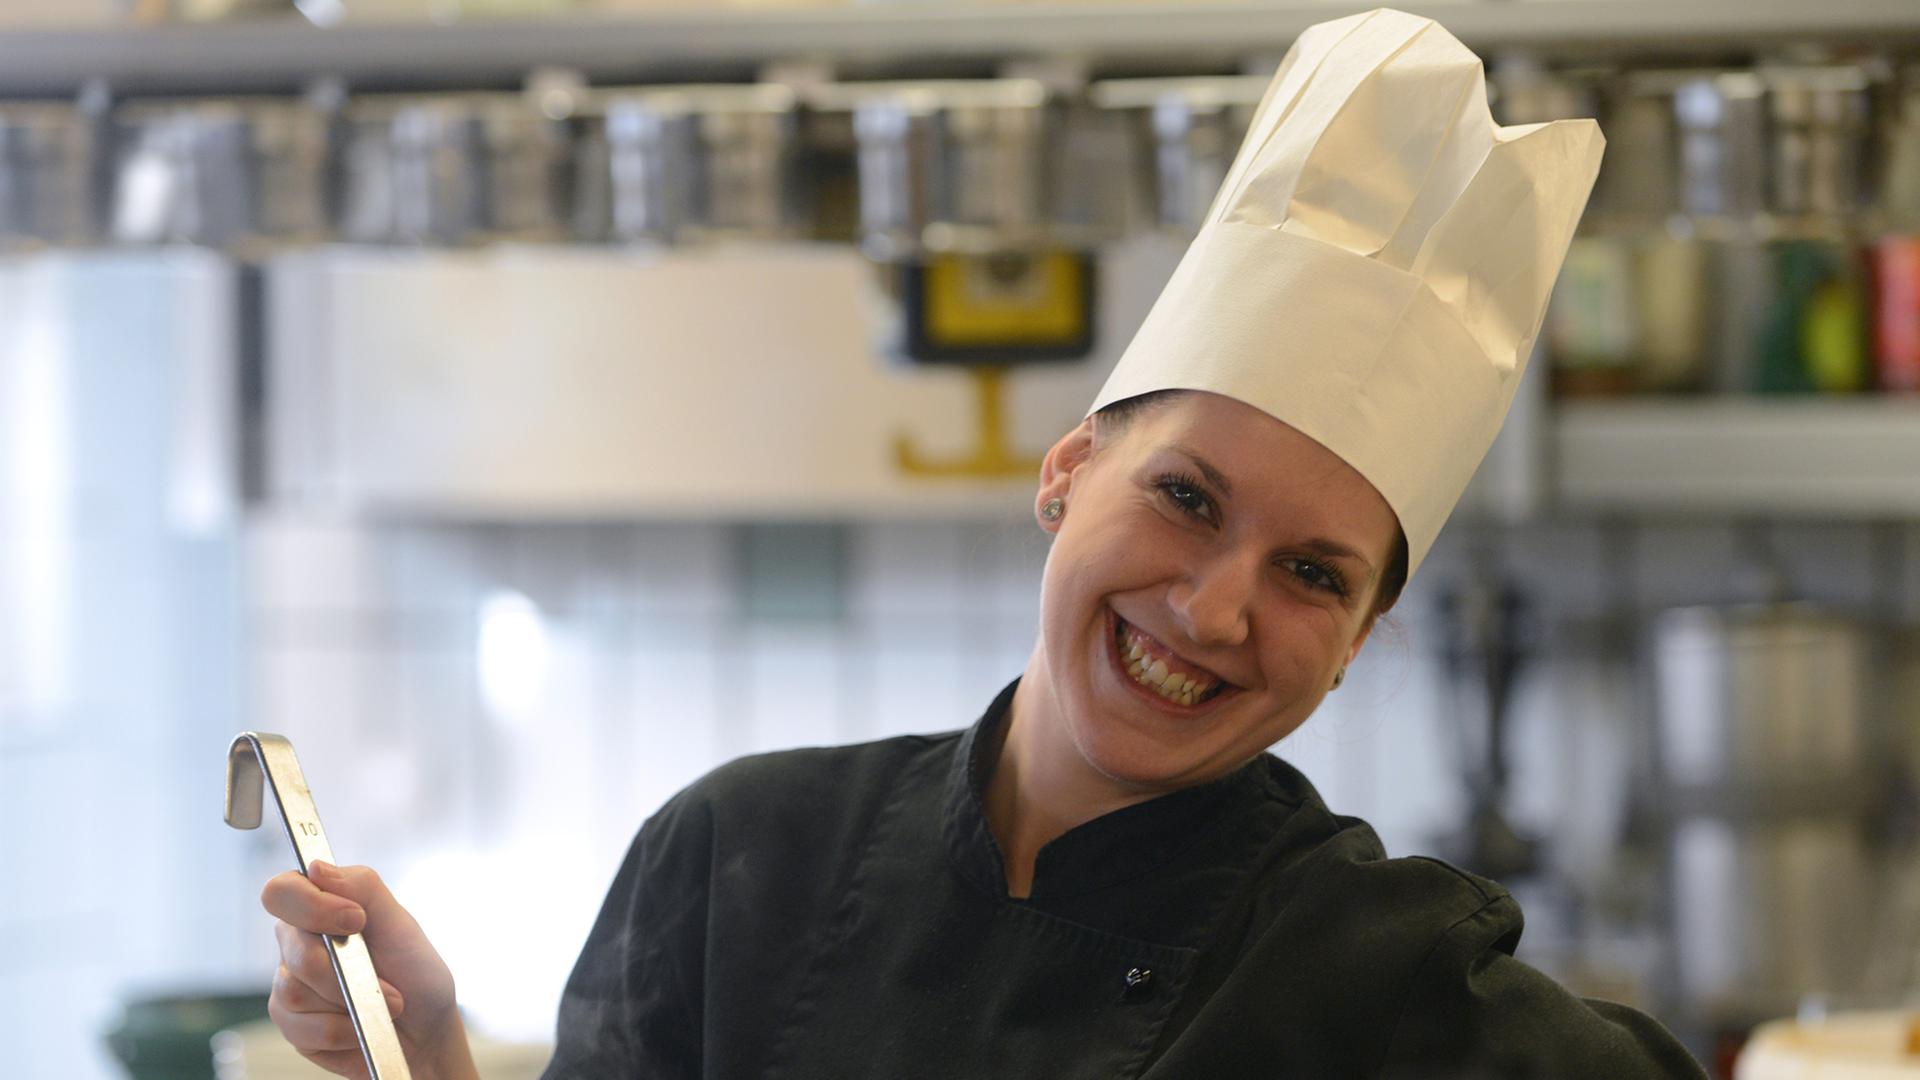 Eine Frau mit Kochmütze auf dem Kopf steht in einer Restaurantküche und rührt mit einem Löffel in einem Topf.